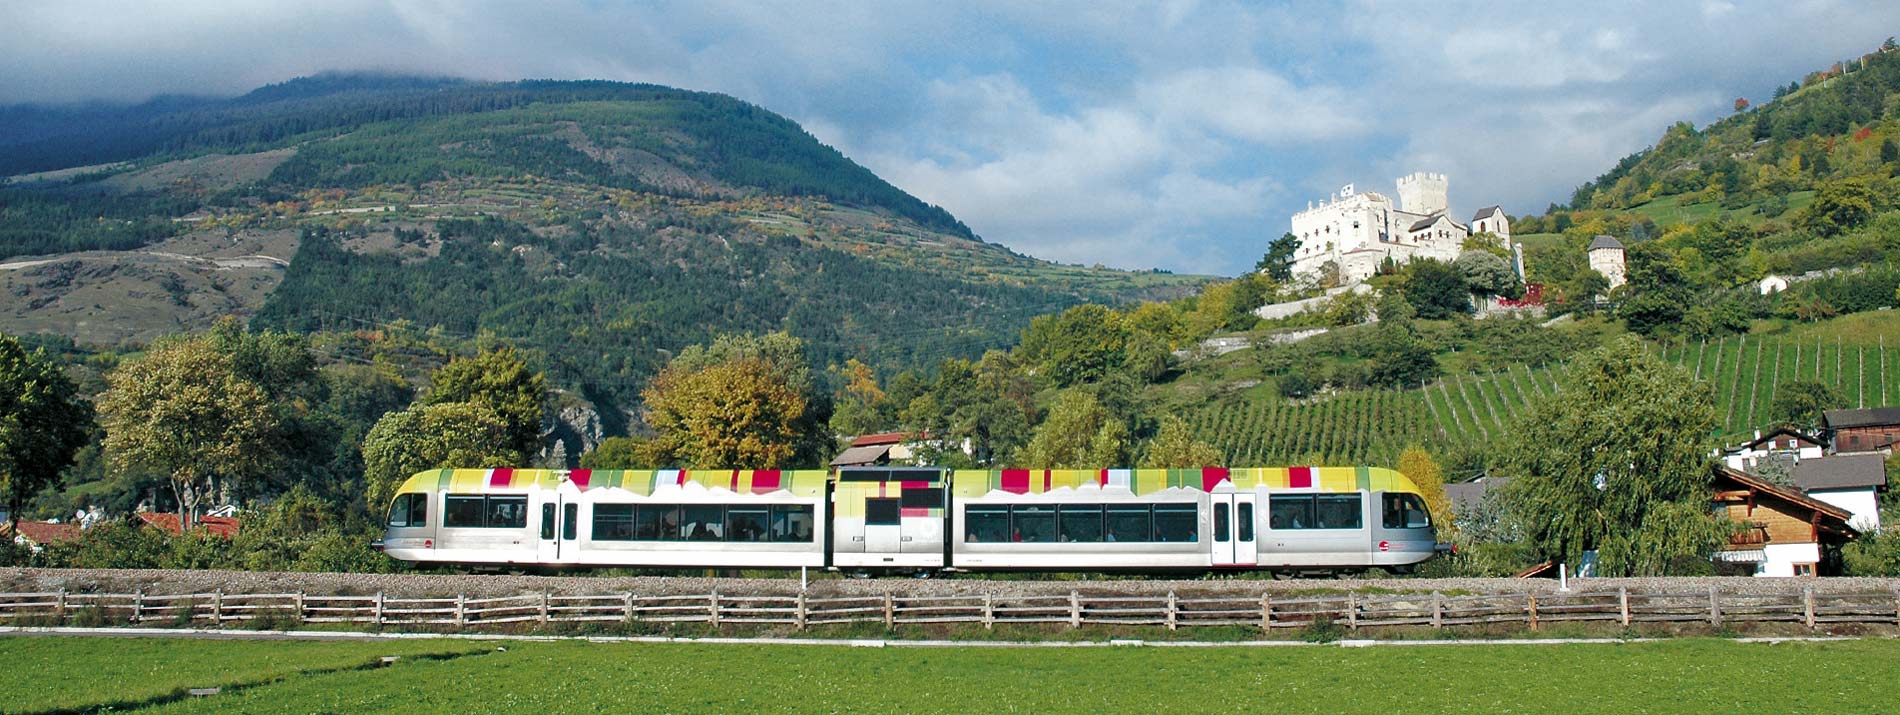 Train-Guestcard-Gasserhof-Schenna